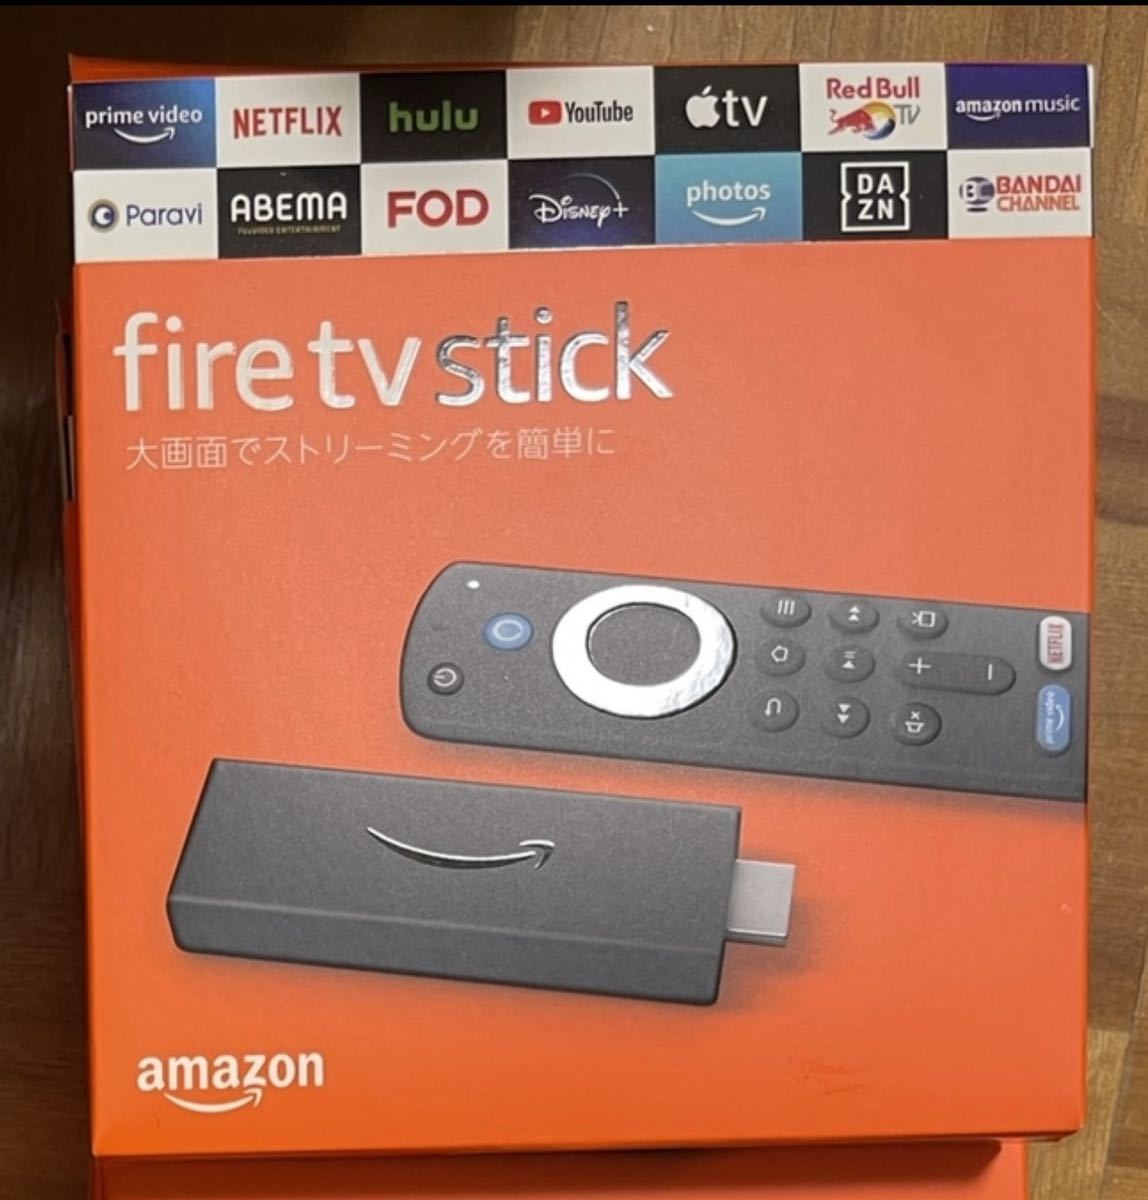 【新品未開封】Amazon Fire TV Stick - Alexa対応音声認識リモコン(第3世代)付属 | ストリーミングメディアプレーヤー